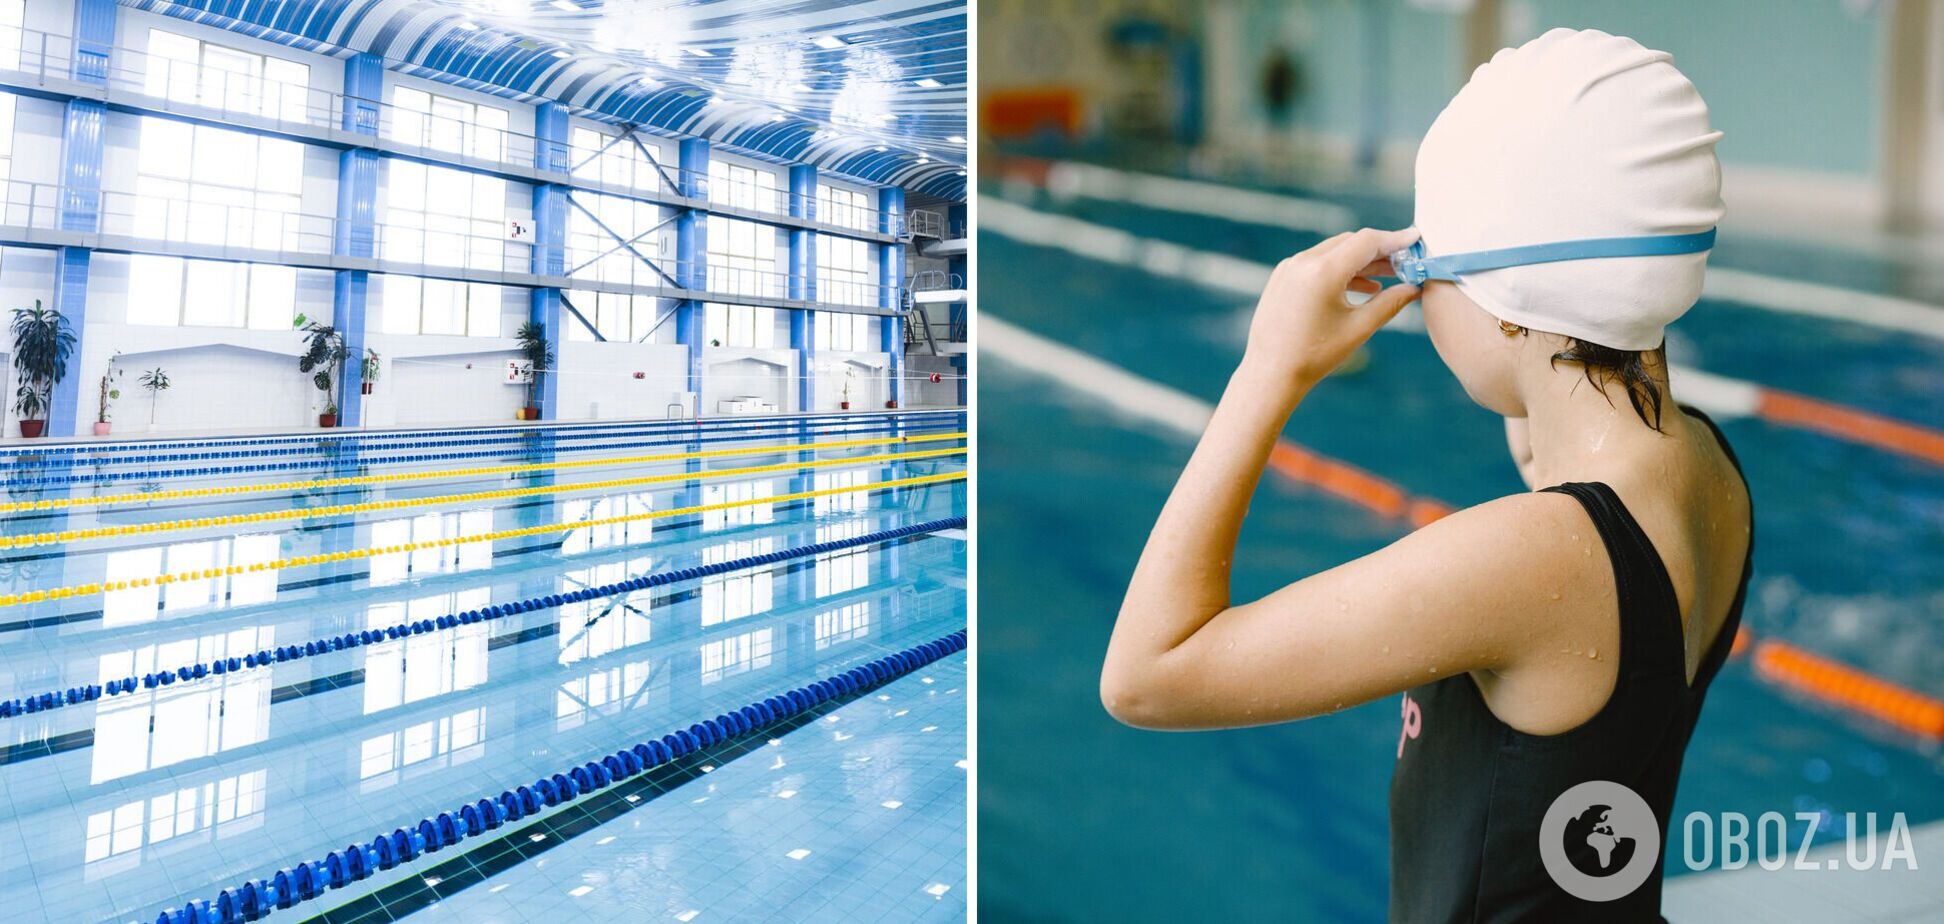  Львівських школярів безкоштовно вчитимуть плавати. Перші подробиці